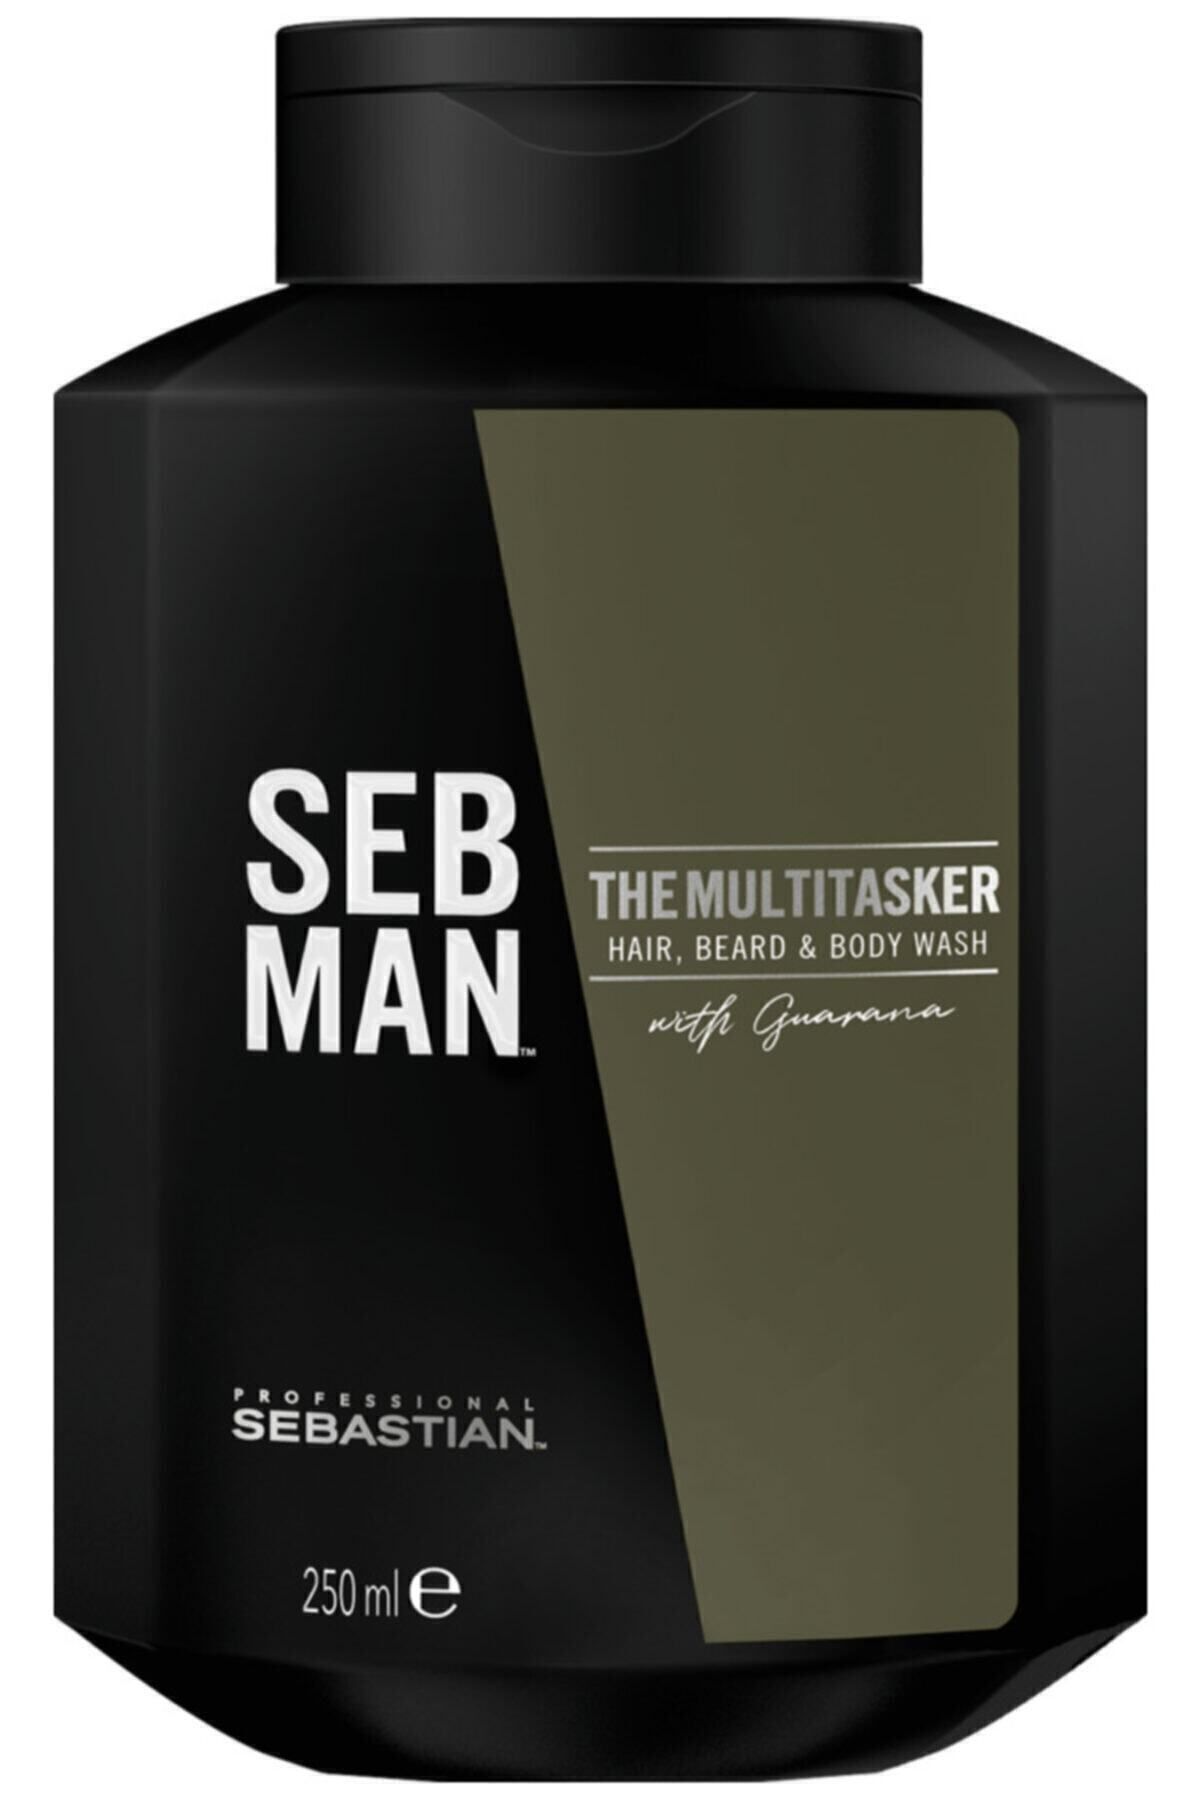 Sebastian SEB MAN THE MULTİ TASKER BODY WASH 250 ML KEYON611